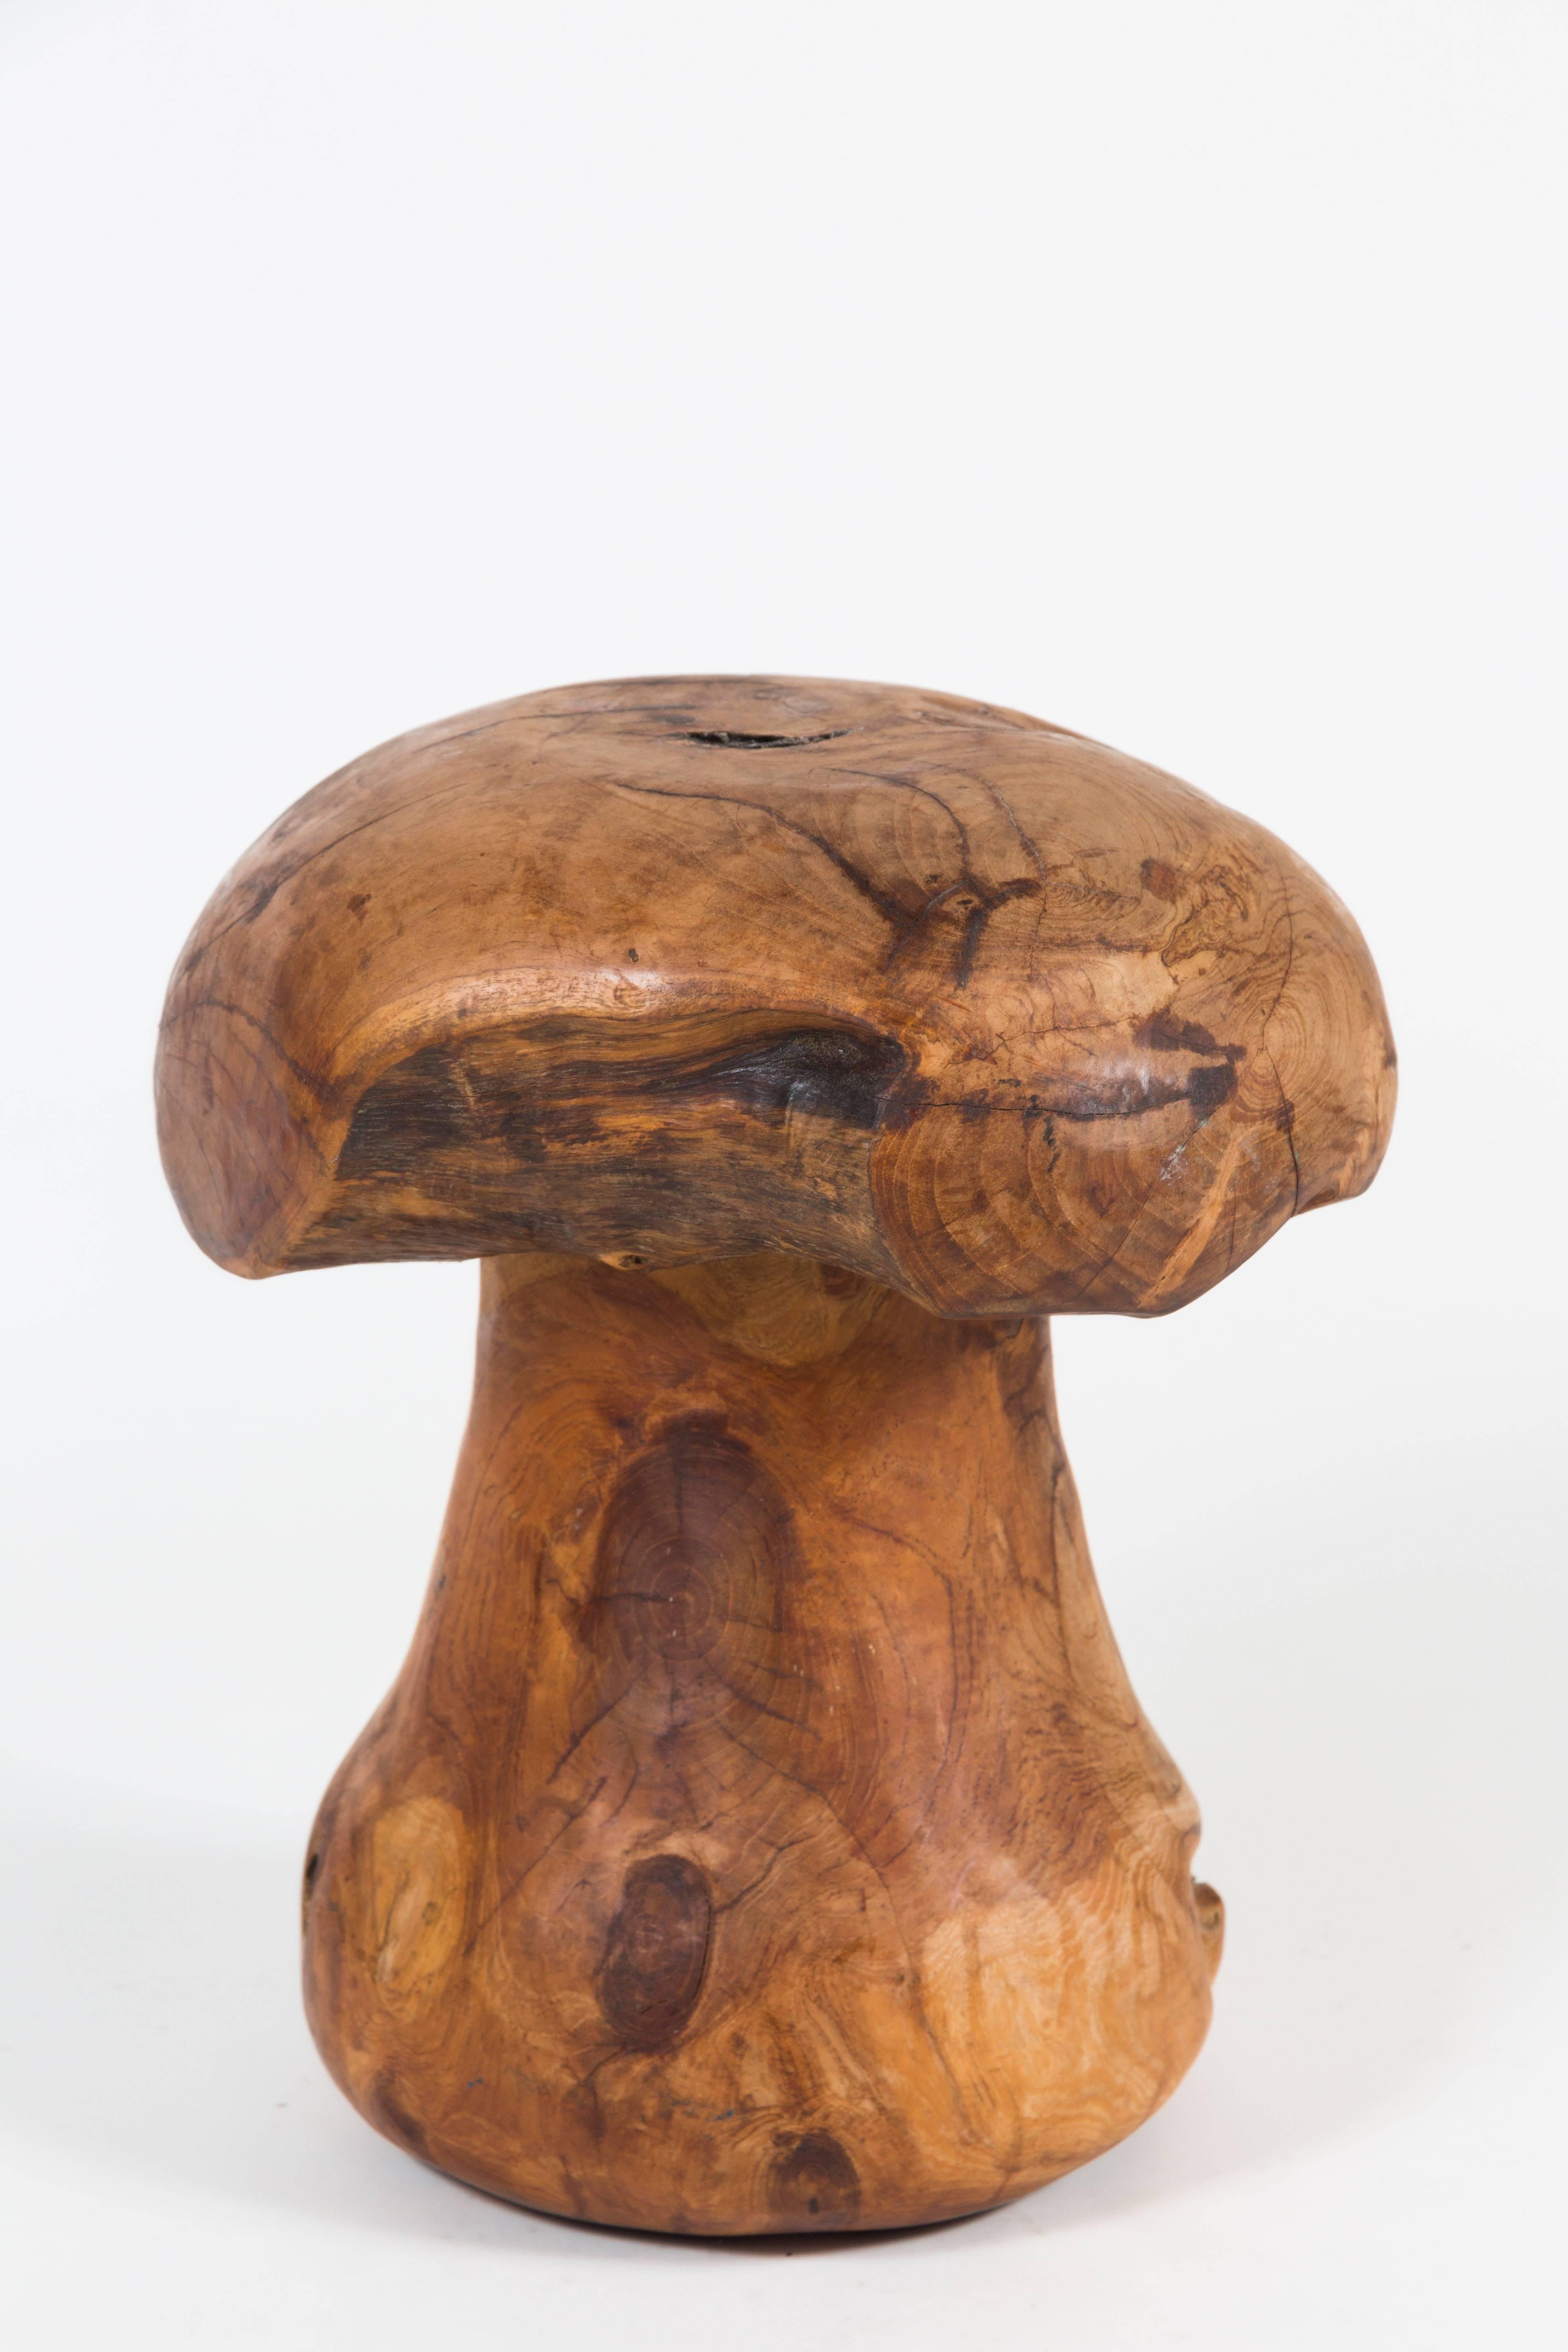 mushroom stools for sale